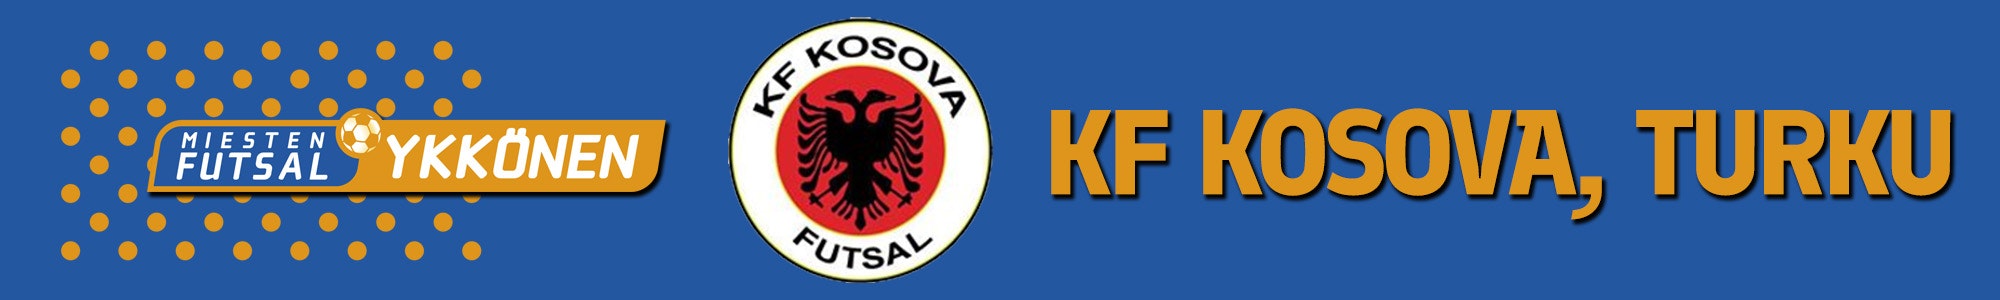 KF Kosova